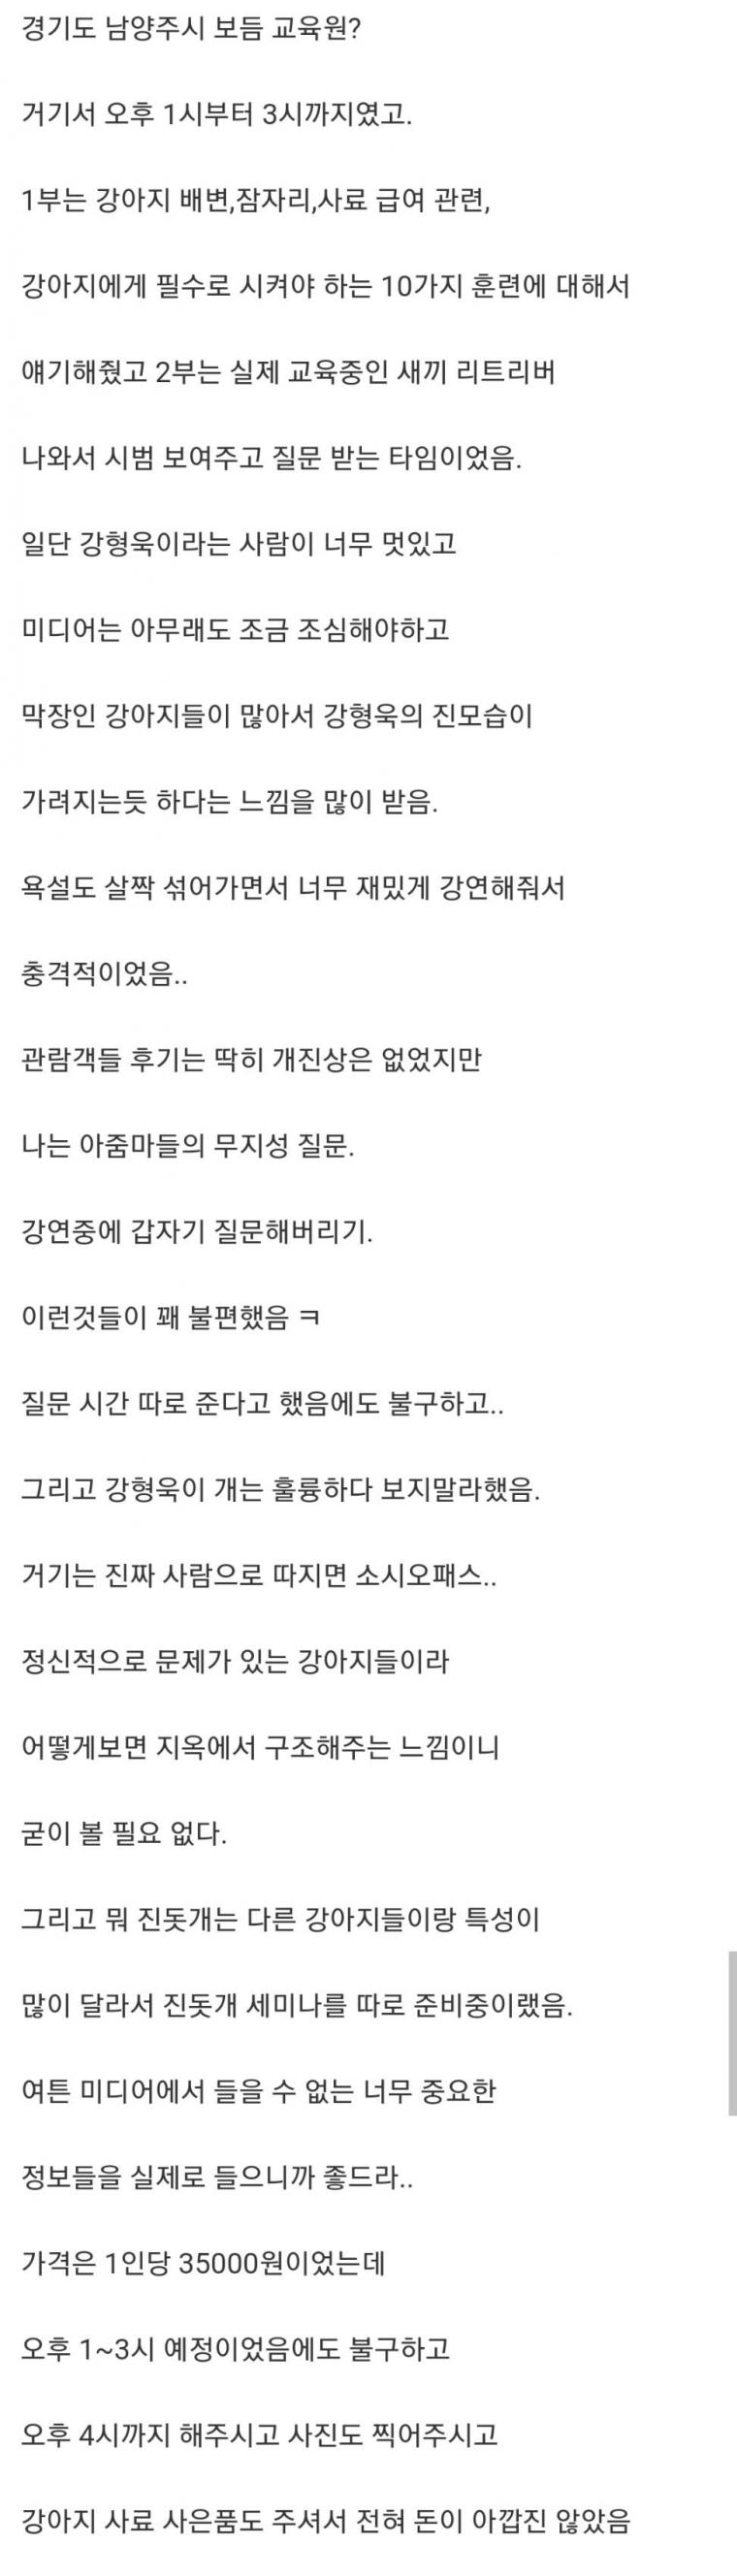 반려견 관련 강형욱 세미나 후기.txt